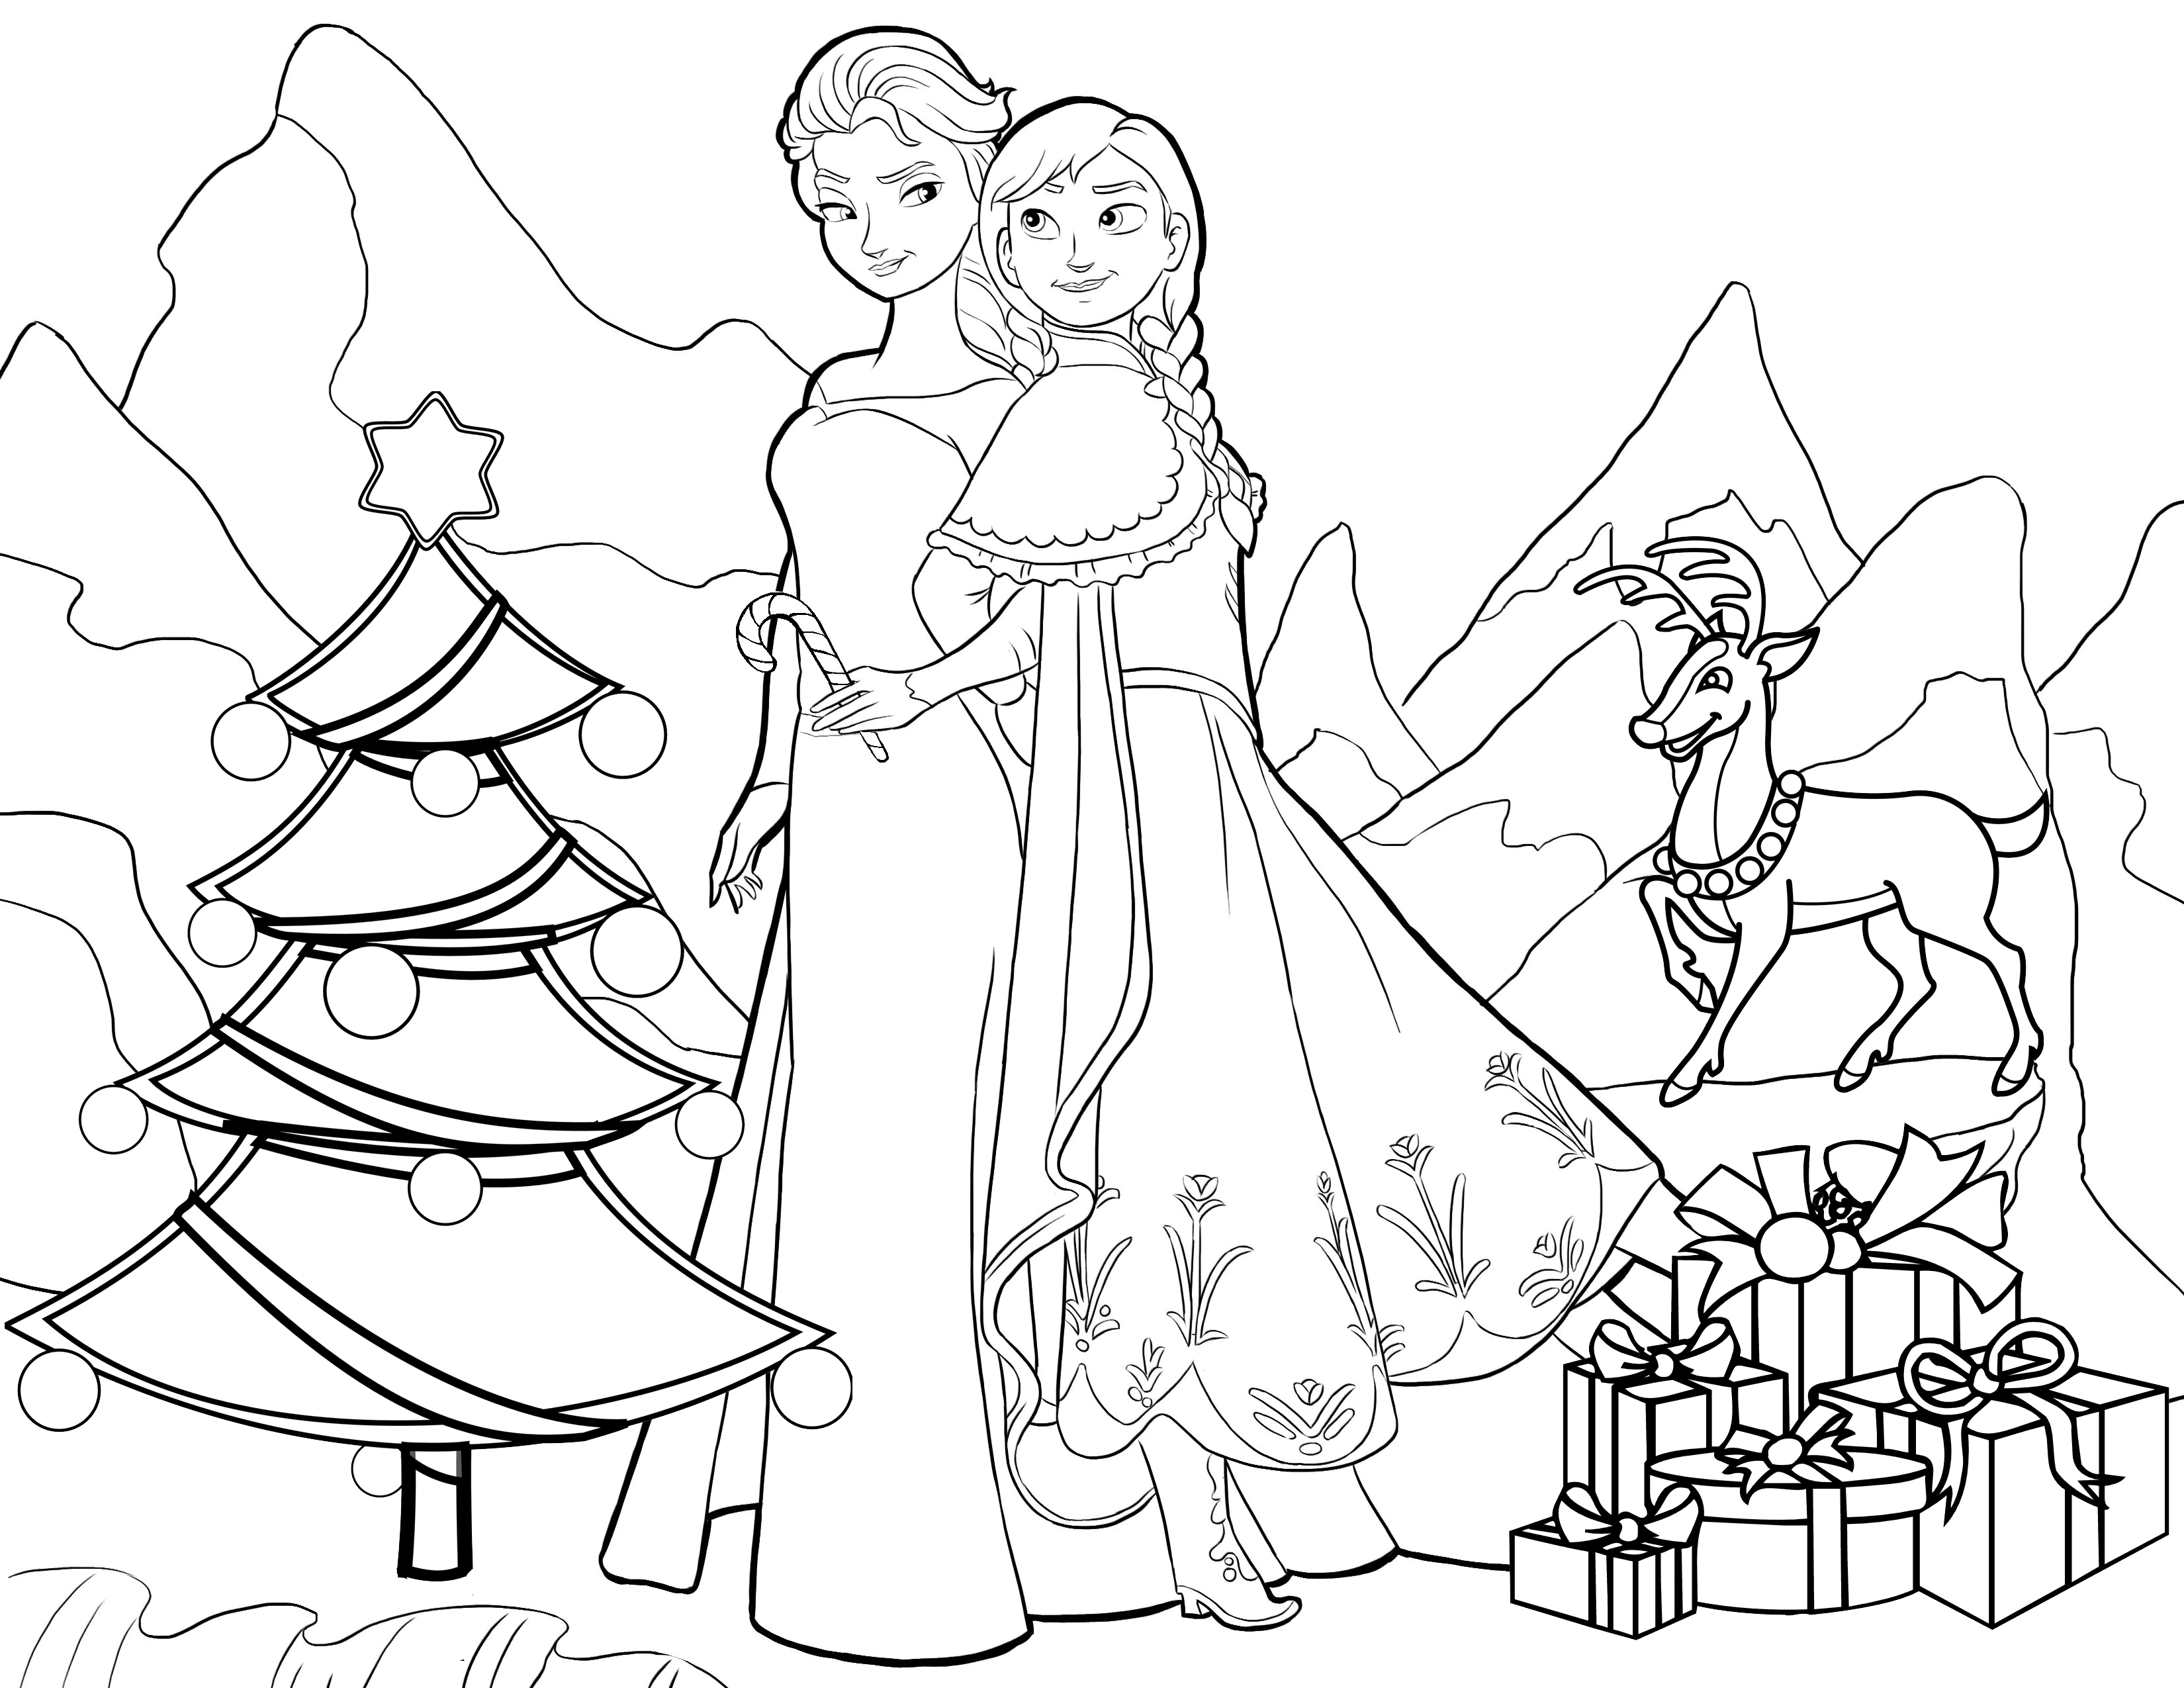 Tranh tô màu giáng sinh công chúa Elsa và Anna